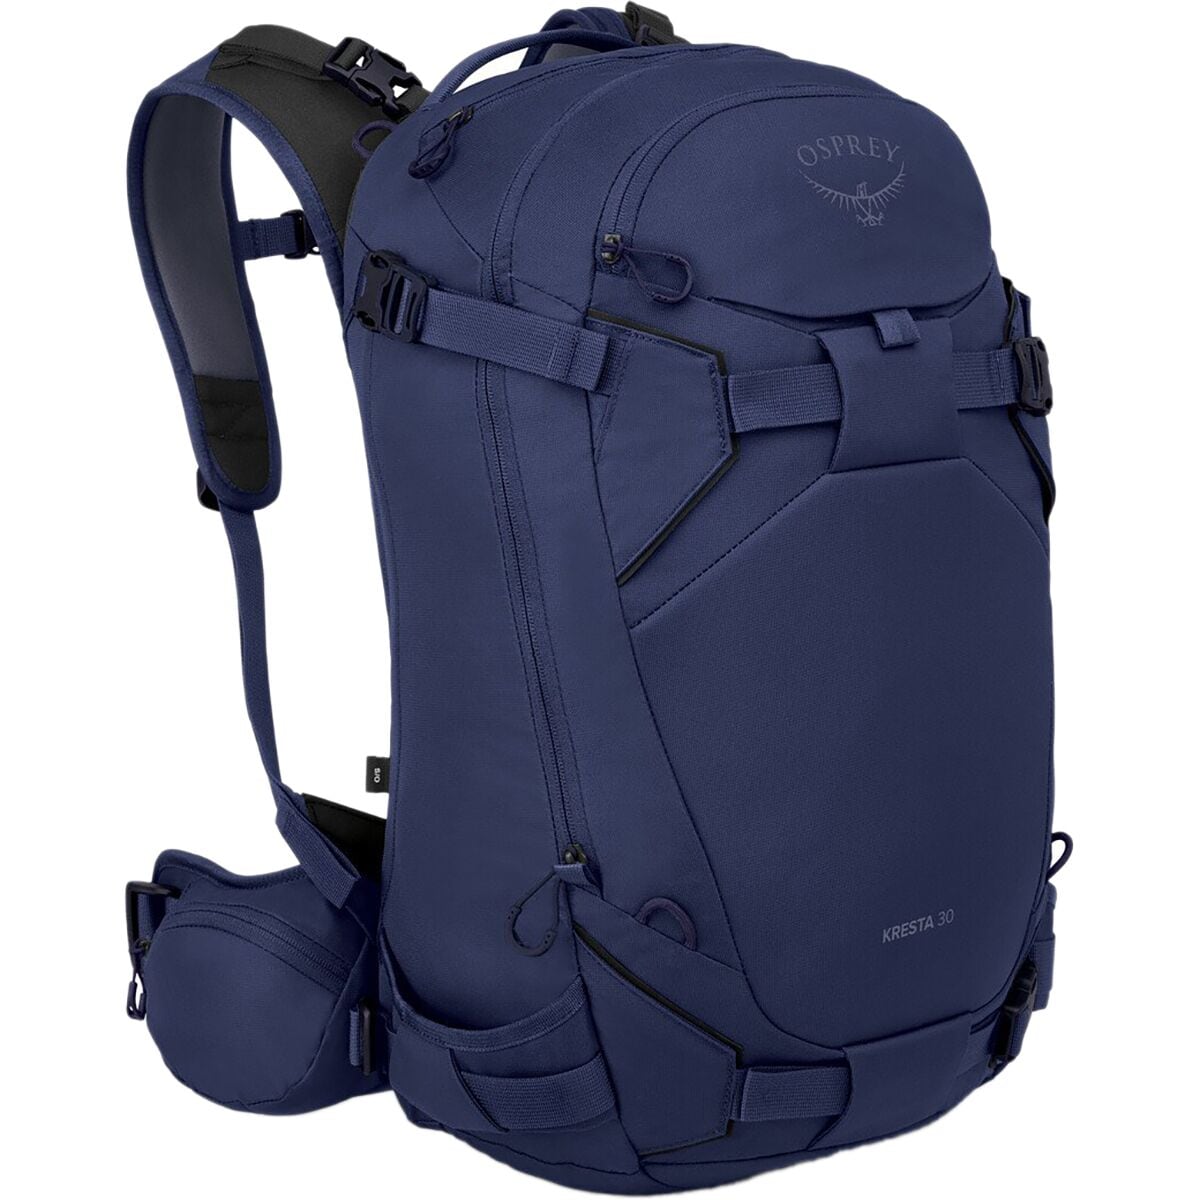 Osprey Packs Kresta 30L Backpack - Women's